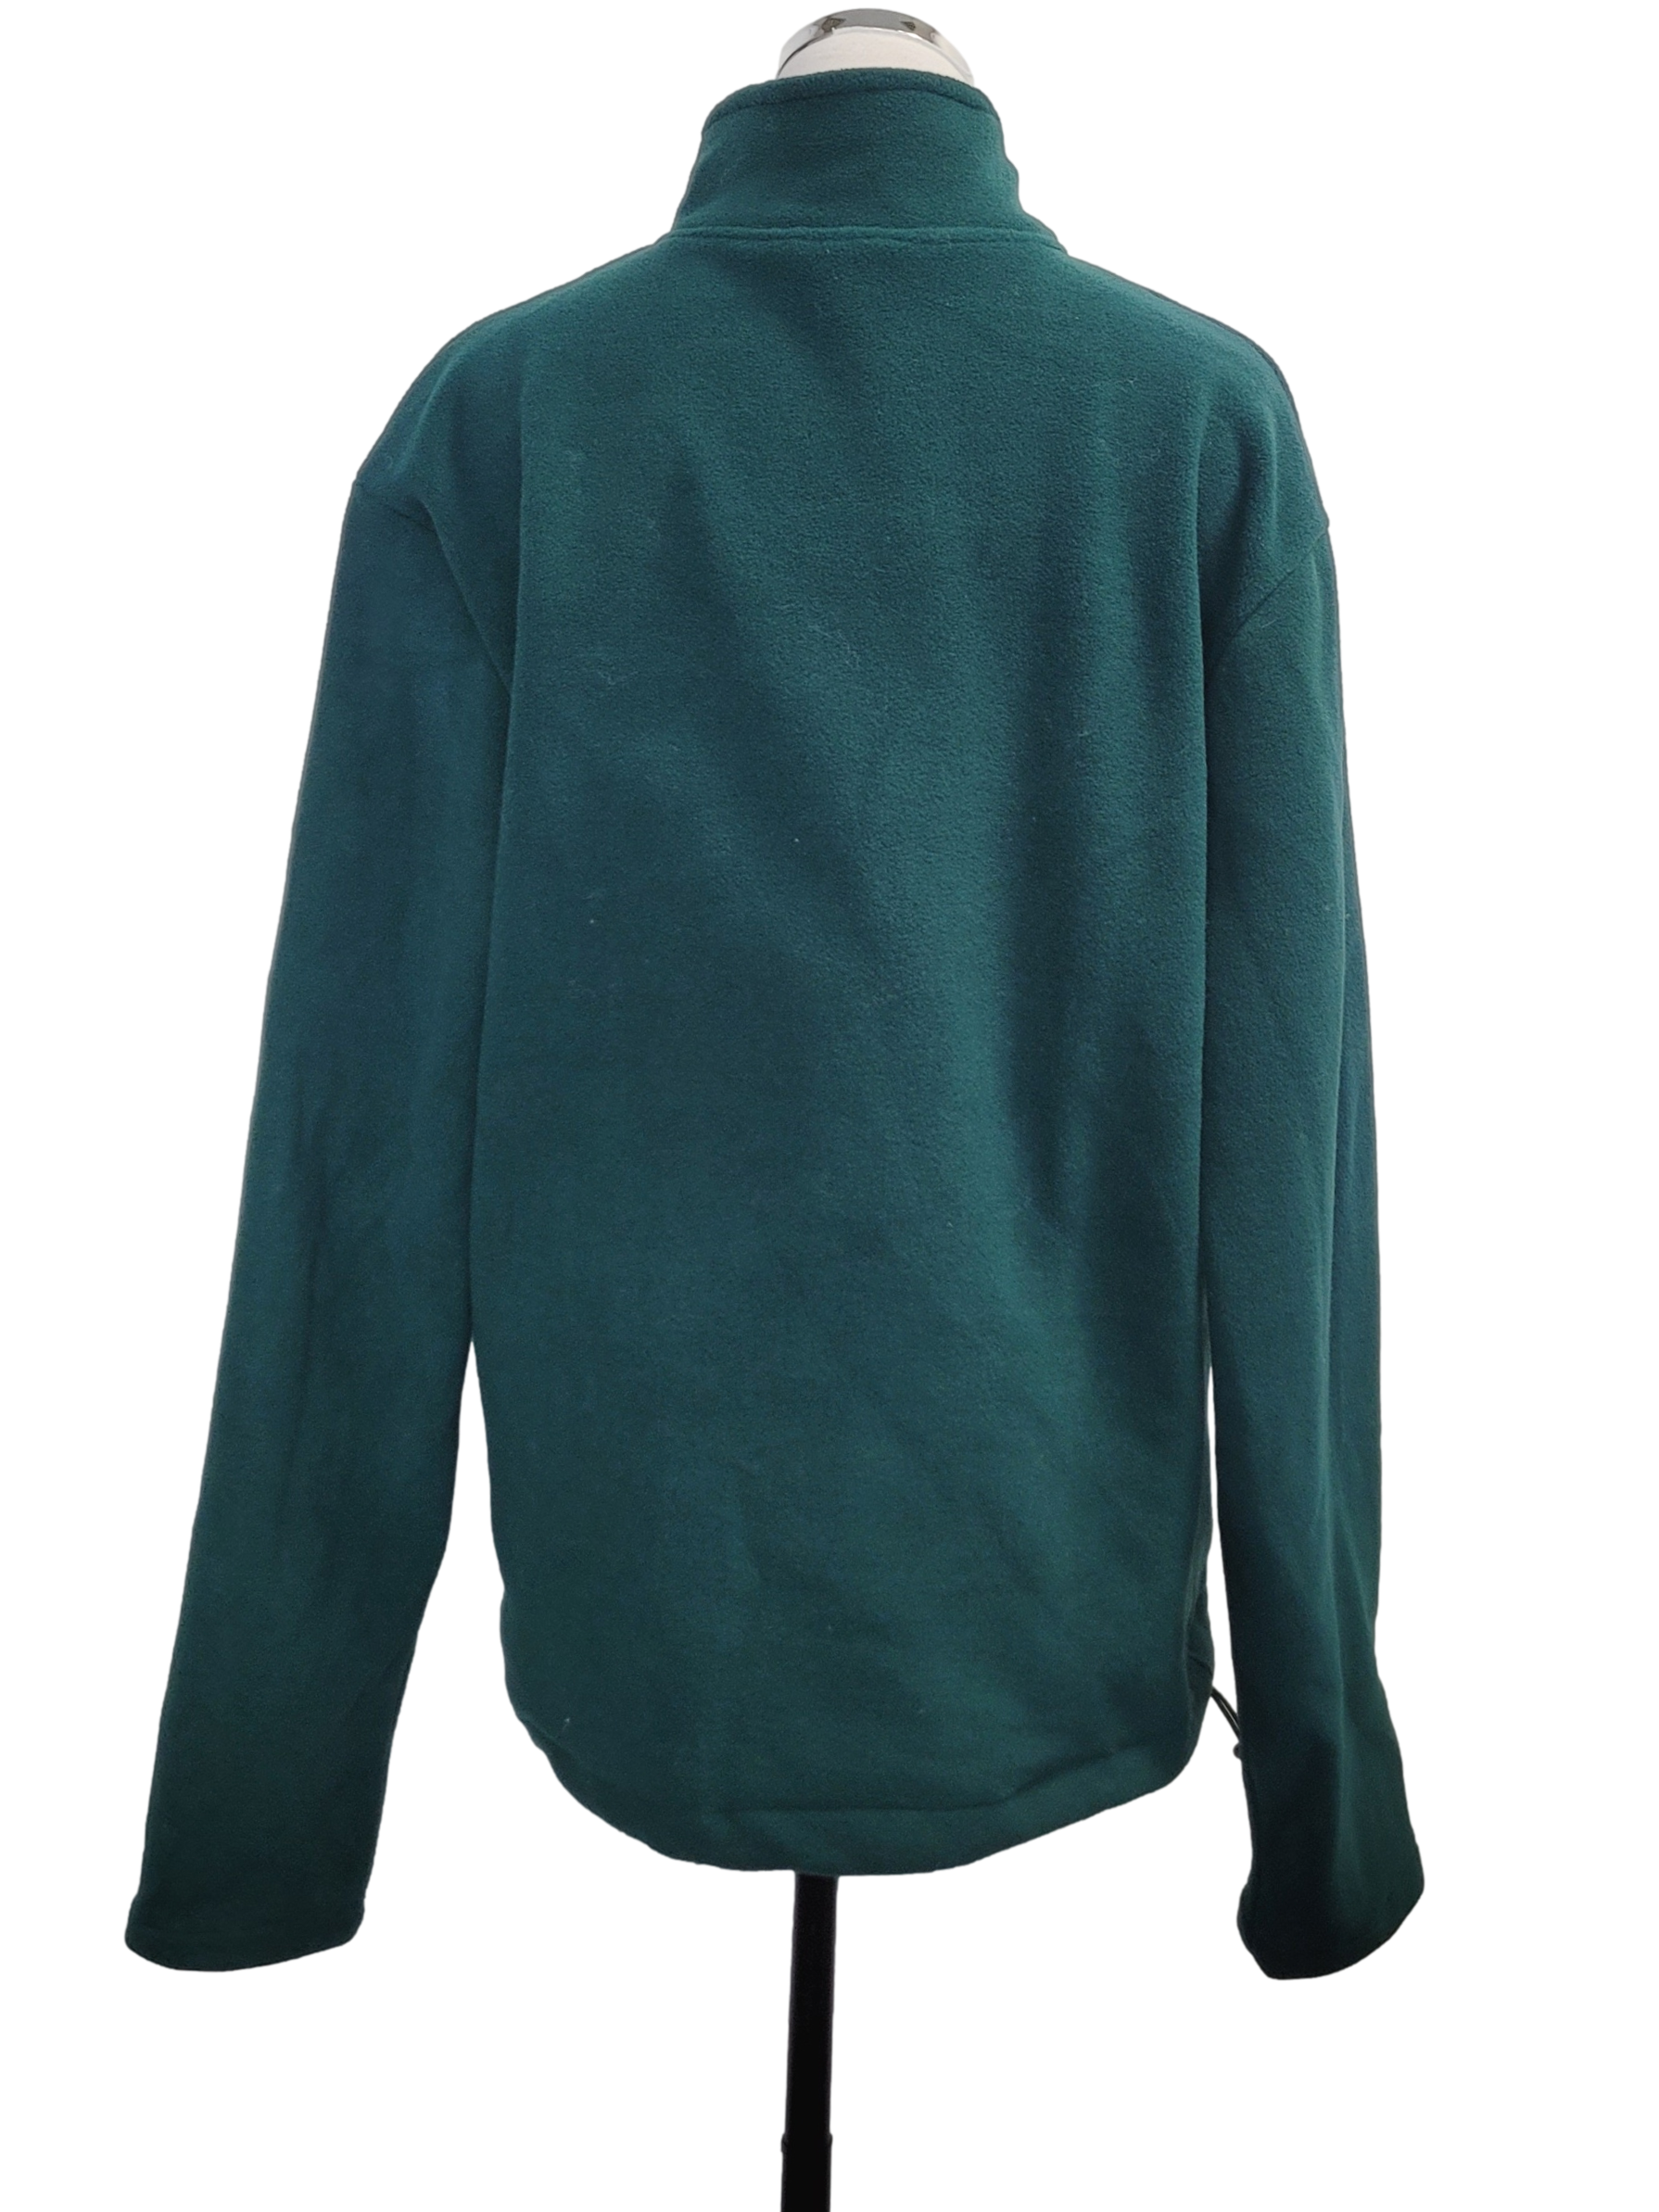 Seaweed Green Long Sleeves Sweater